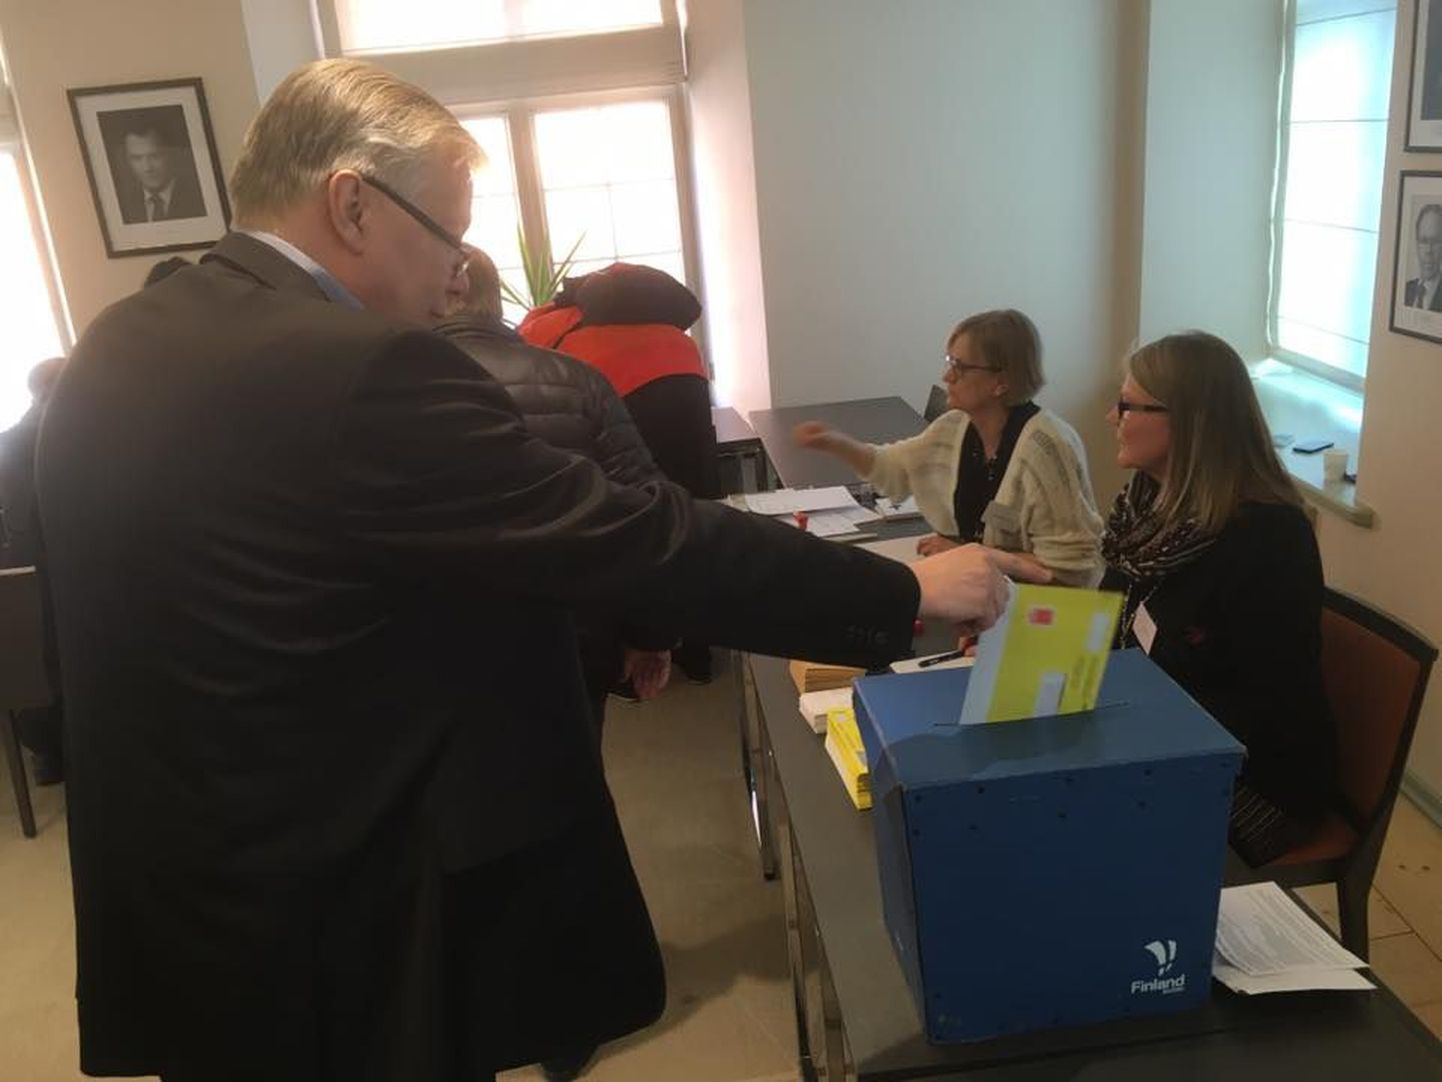 Soome kohalikud valimised algas täna Tallinnas. Eelhääletus jätkub 1. aprillini Soome saatkonnas. Esimesena kasutas oma hääleõigust politseiatašee Lars Henriksson.